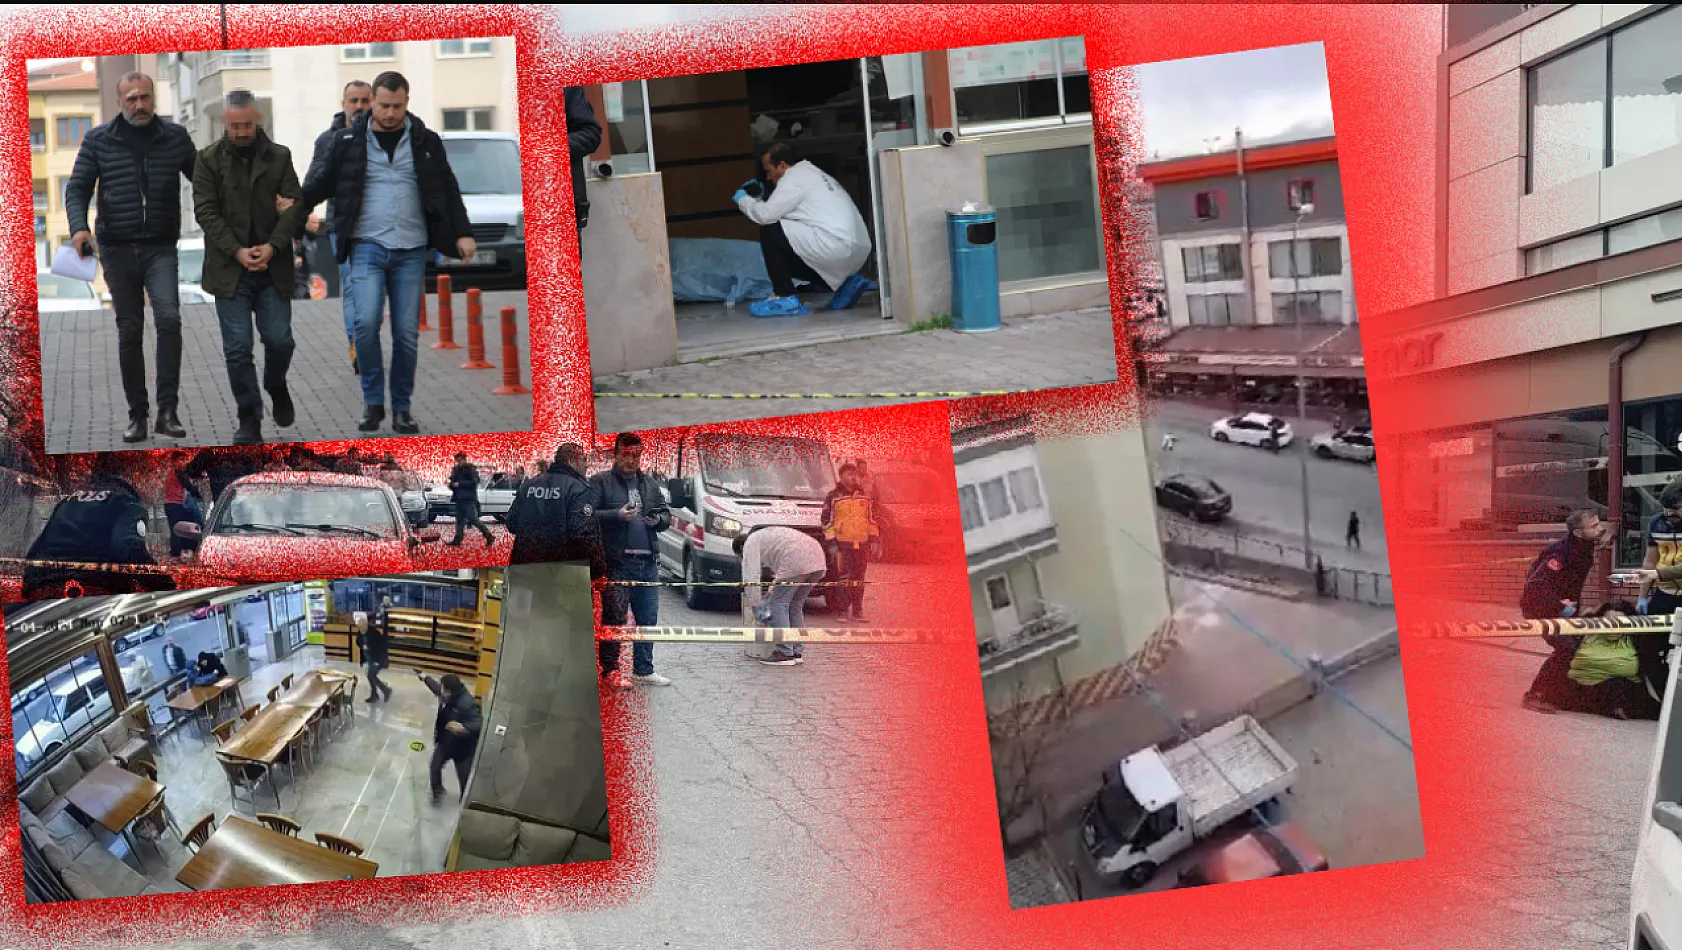 Kayseri'de art arda yaşanan cinayetlerin ardından dikkat çeken tepki!